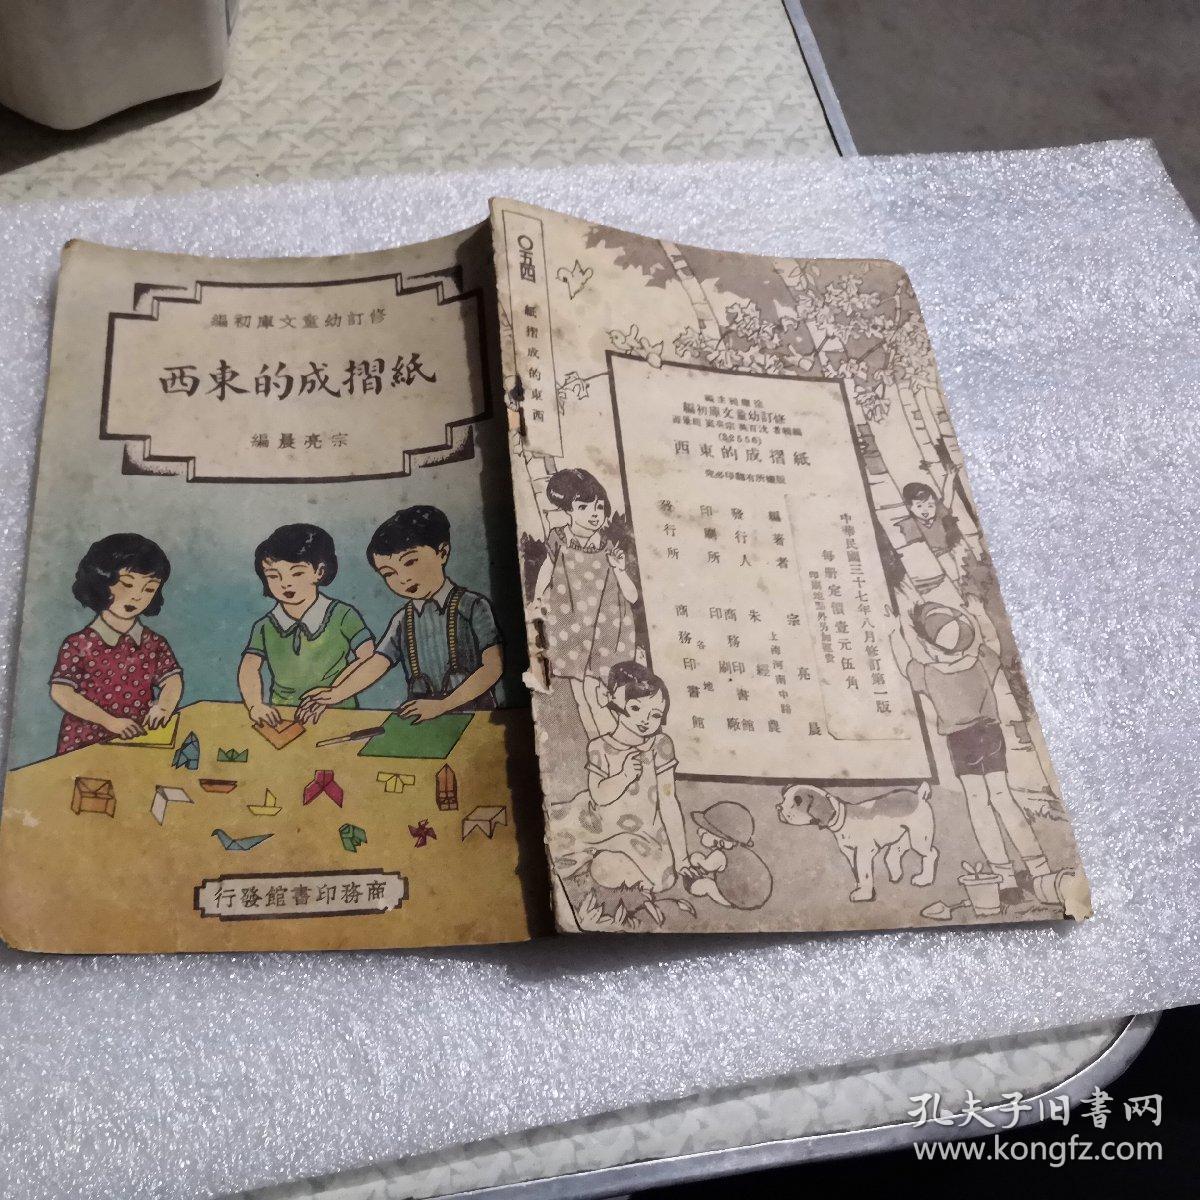 修订幼童文库初编，（纸摺成的东西）中华民国37年八月修订第一版